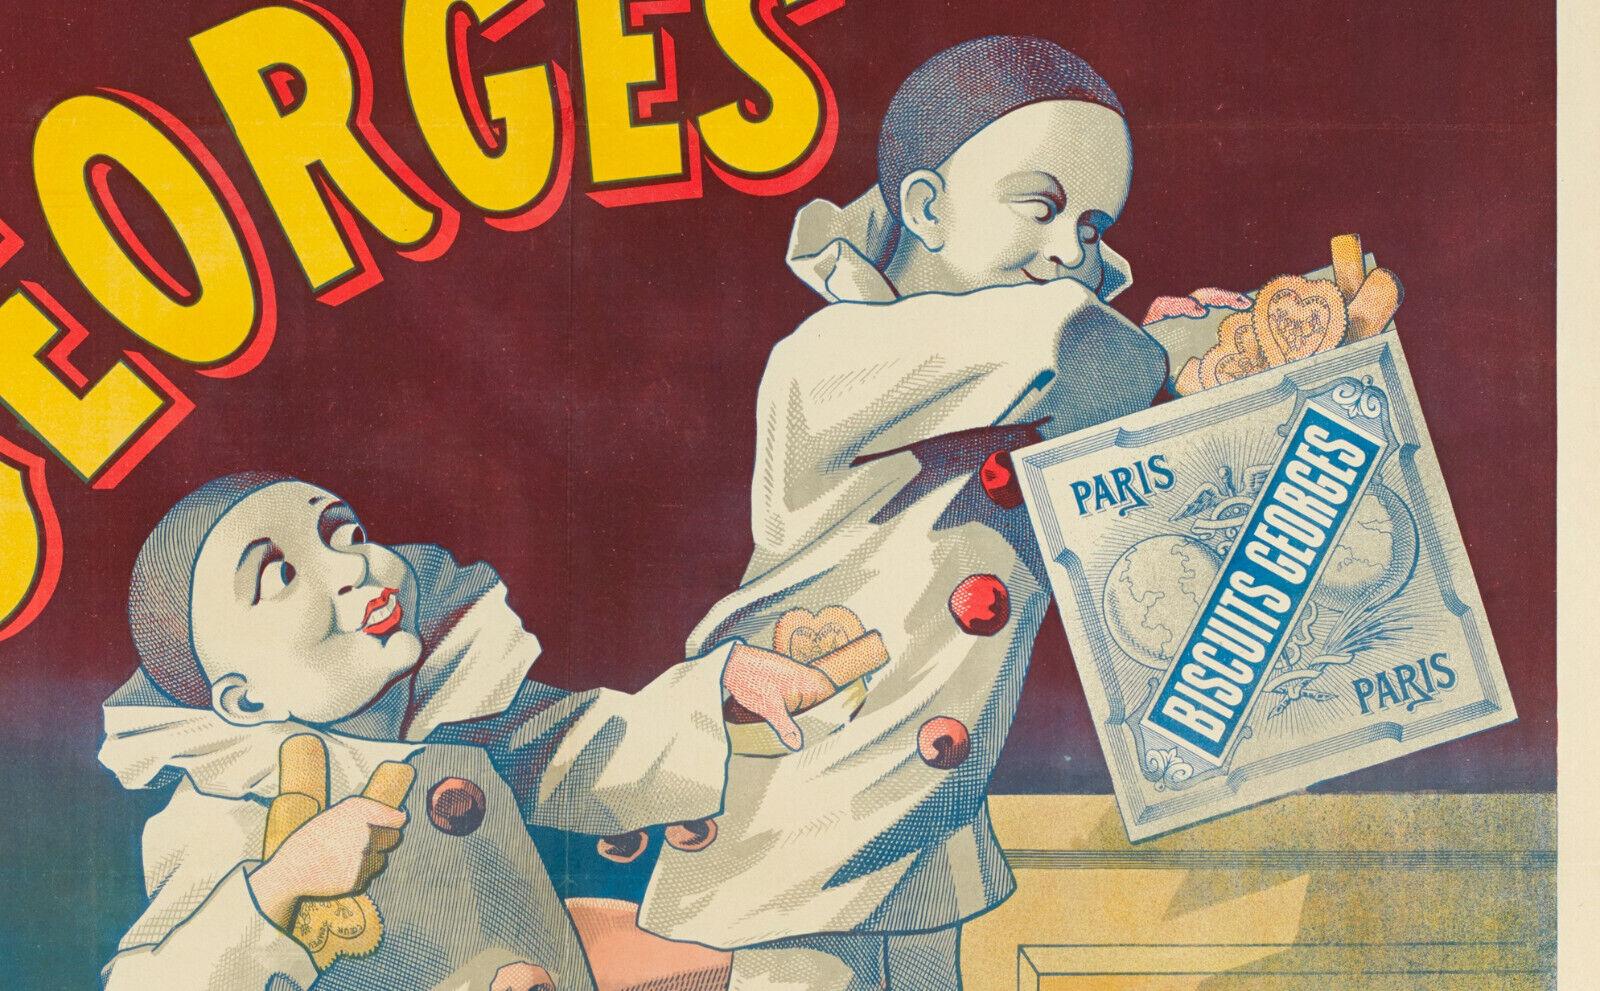 Belle Époque Original Vintage Poster-Biscuit Georges-Caniche-Pierrot-Paris-Chien, 1900 For Sale